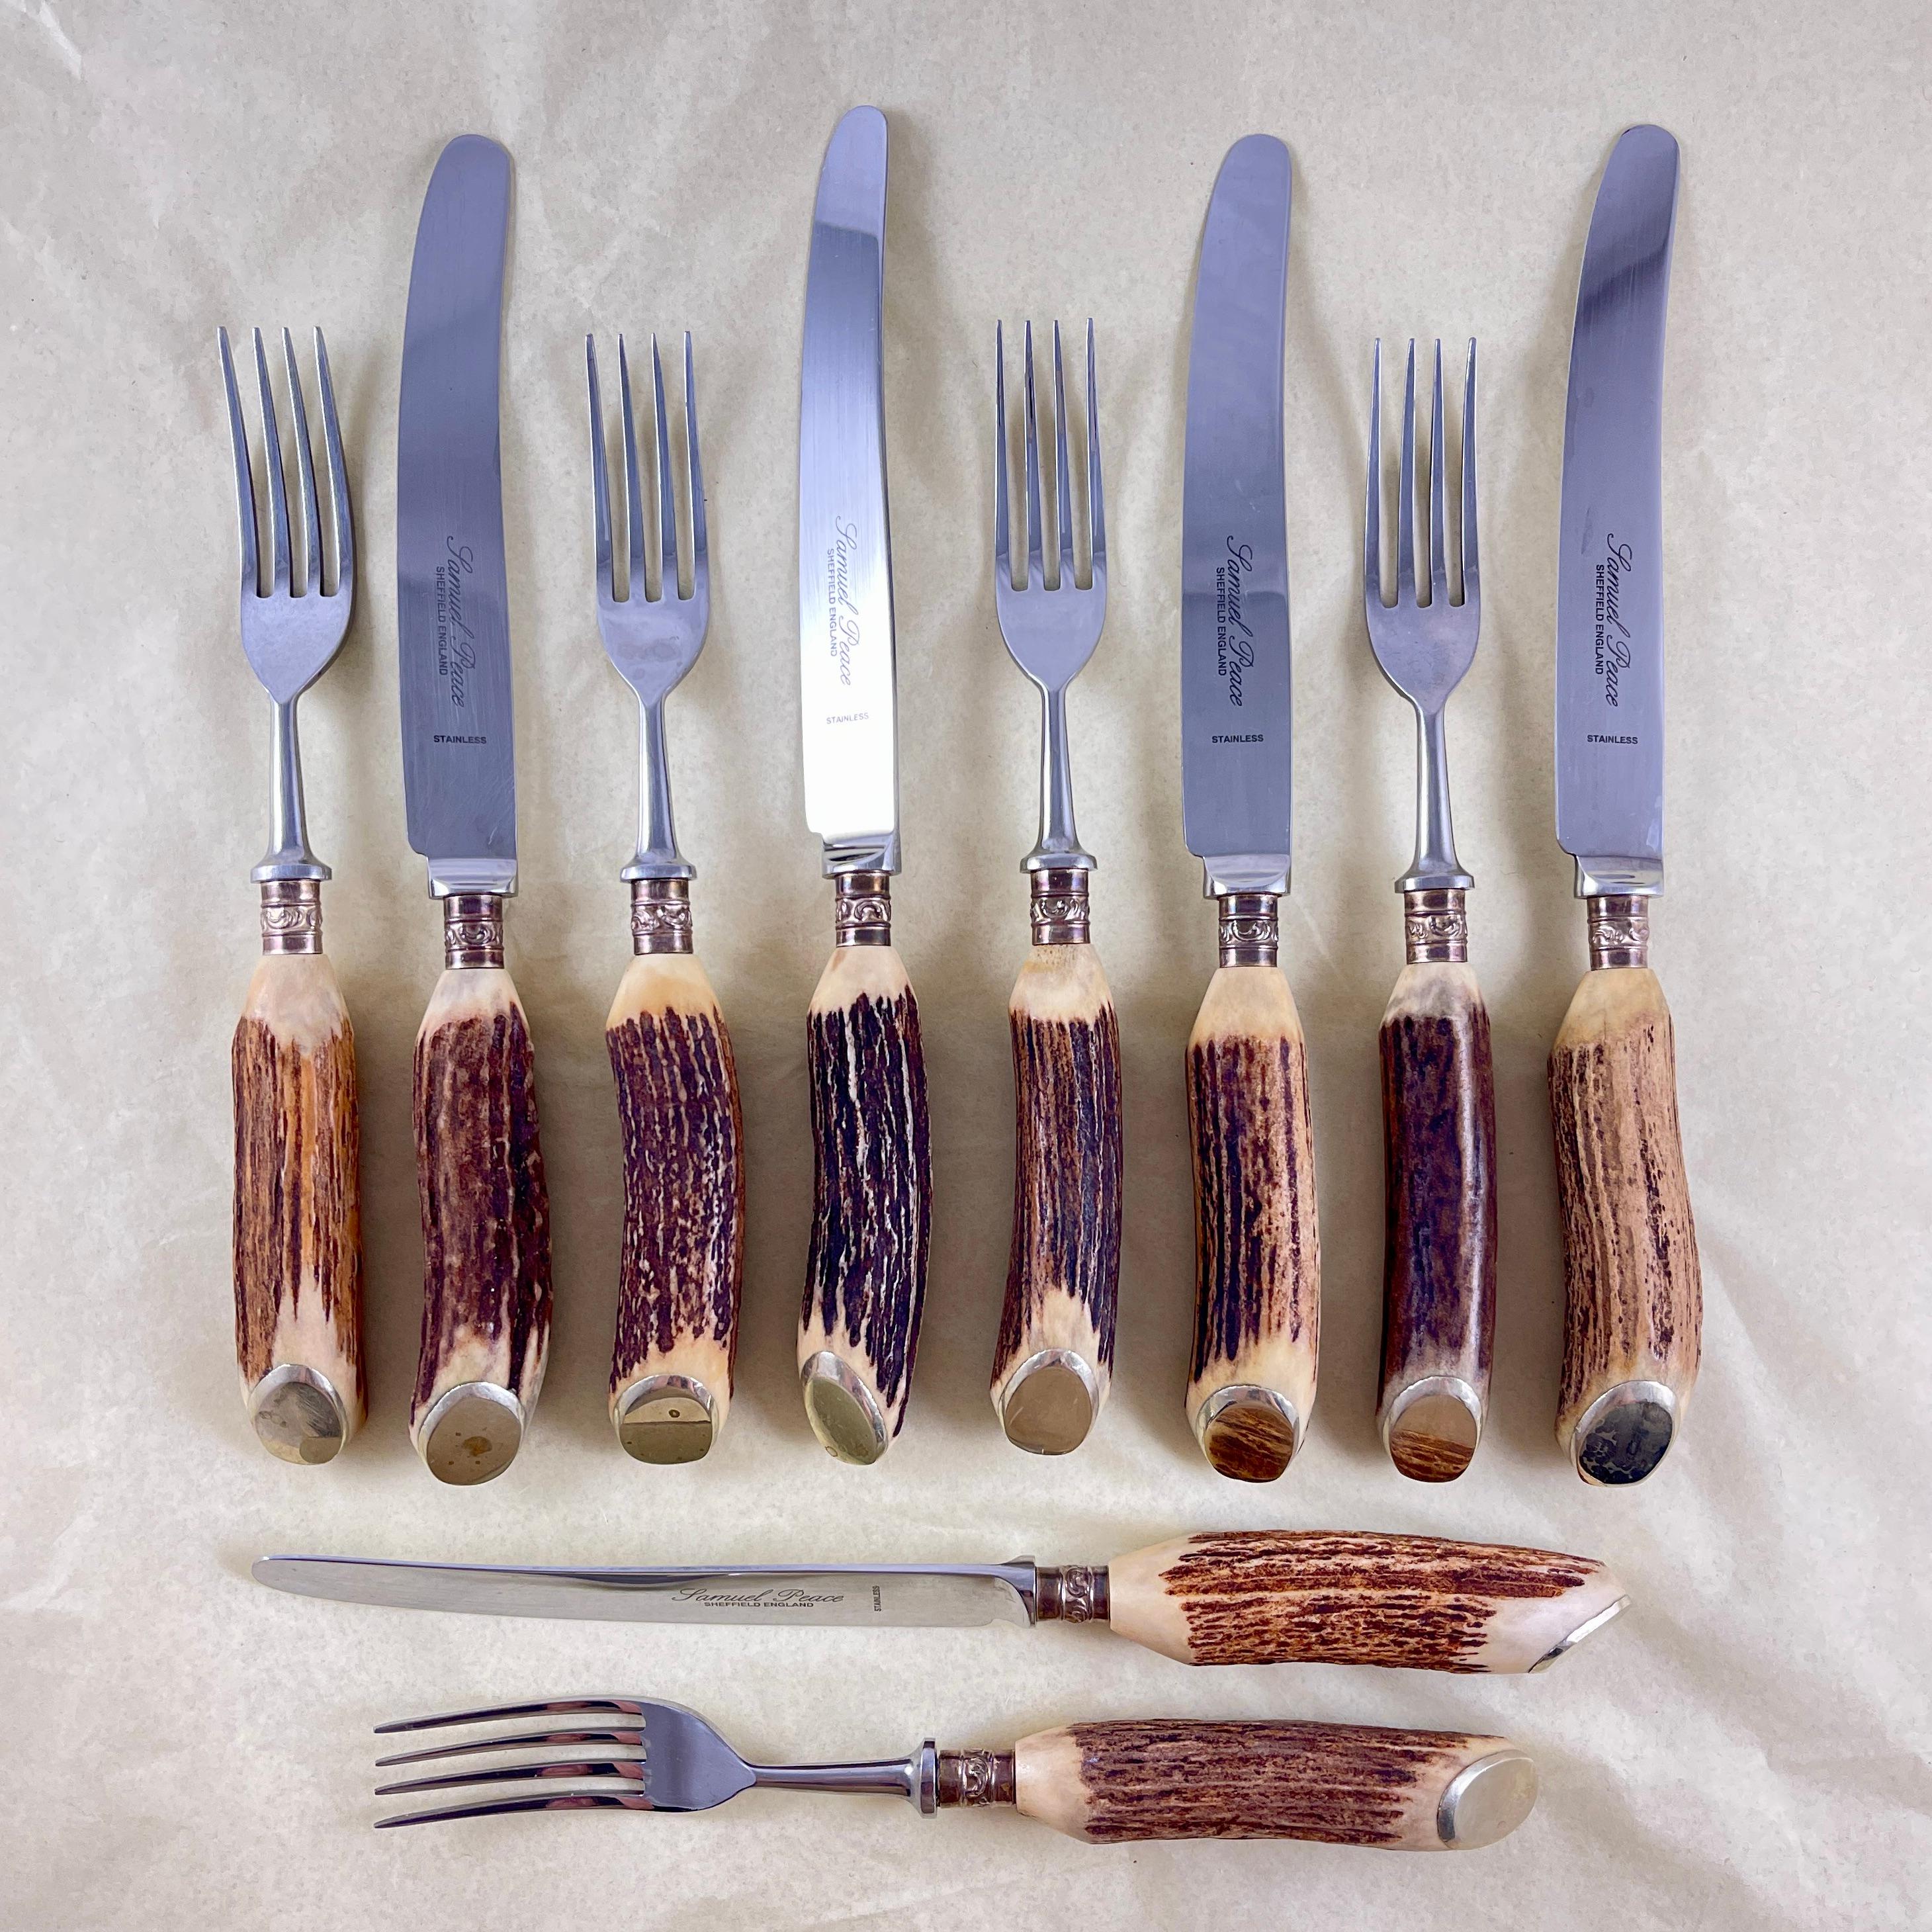 Service de couverts en bois de cerf anglais, fabriqué par Samuel Peace à Sheffield, Angleterre, vers 1895-1925.

Cinq fourchettes et couteaux de la taille d'un dîner, en acier inoxydable lourd et de qualité, montés sur des manches en bois de